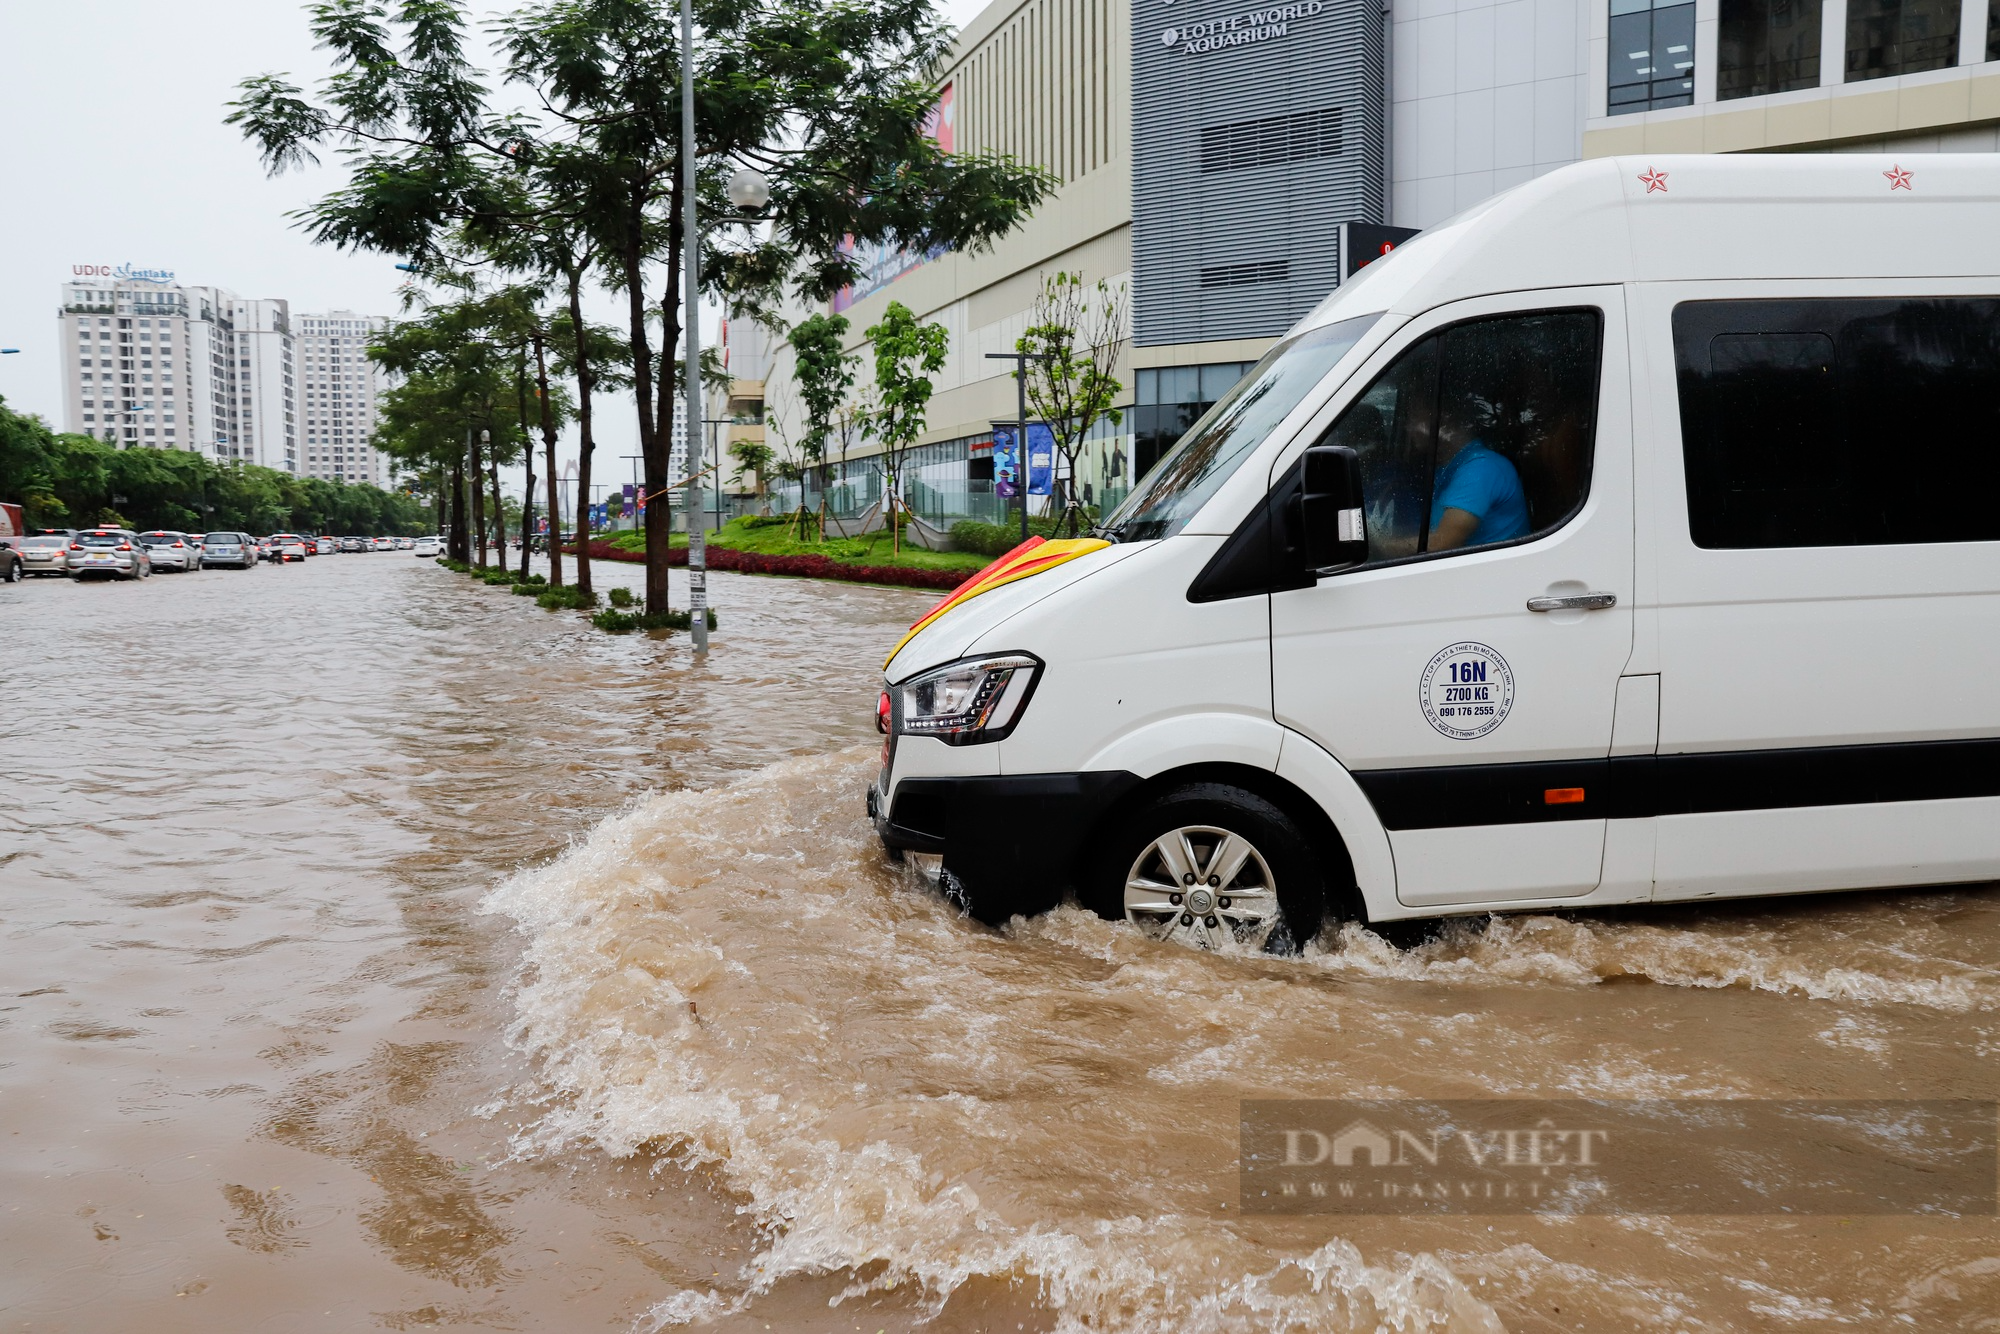 Đường trước trung tâm thương mại lớn nhất Hà Nội ngập sâu kéo dài hàng Km - Ảnh 9.